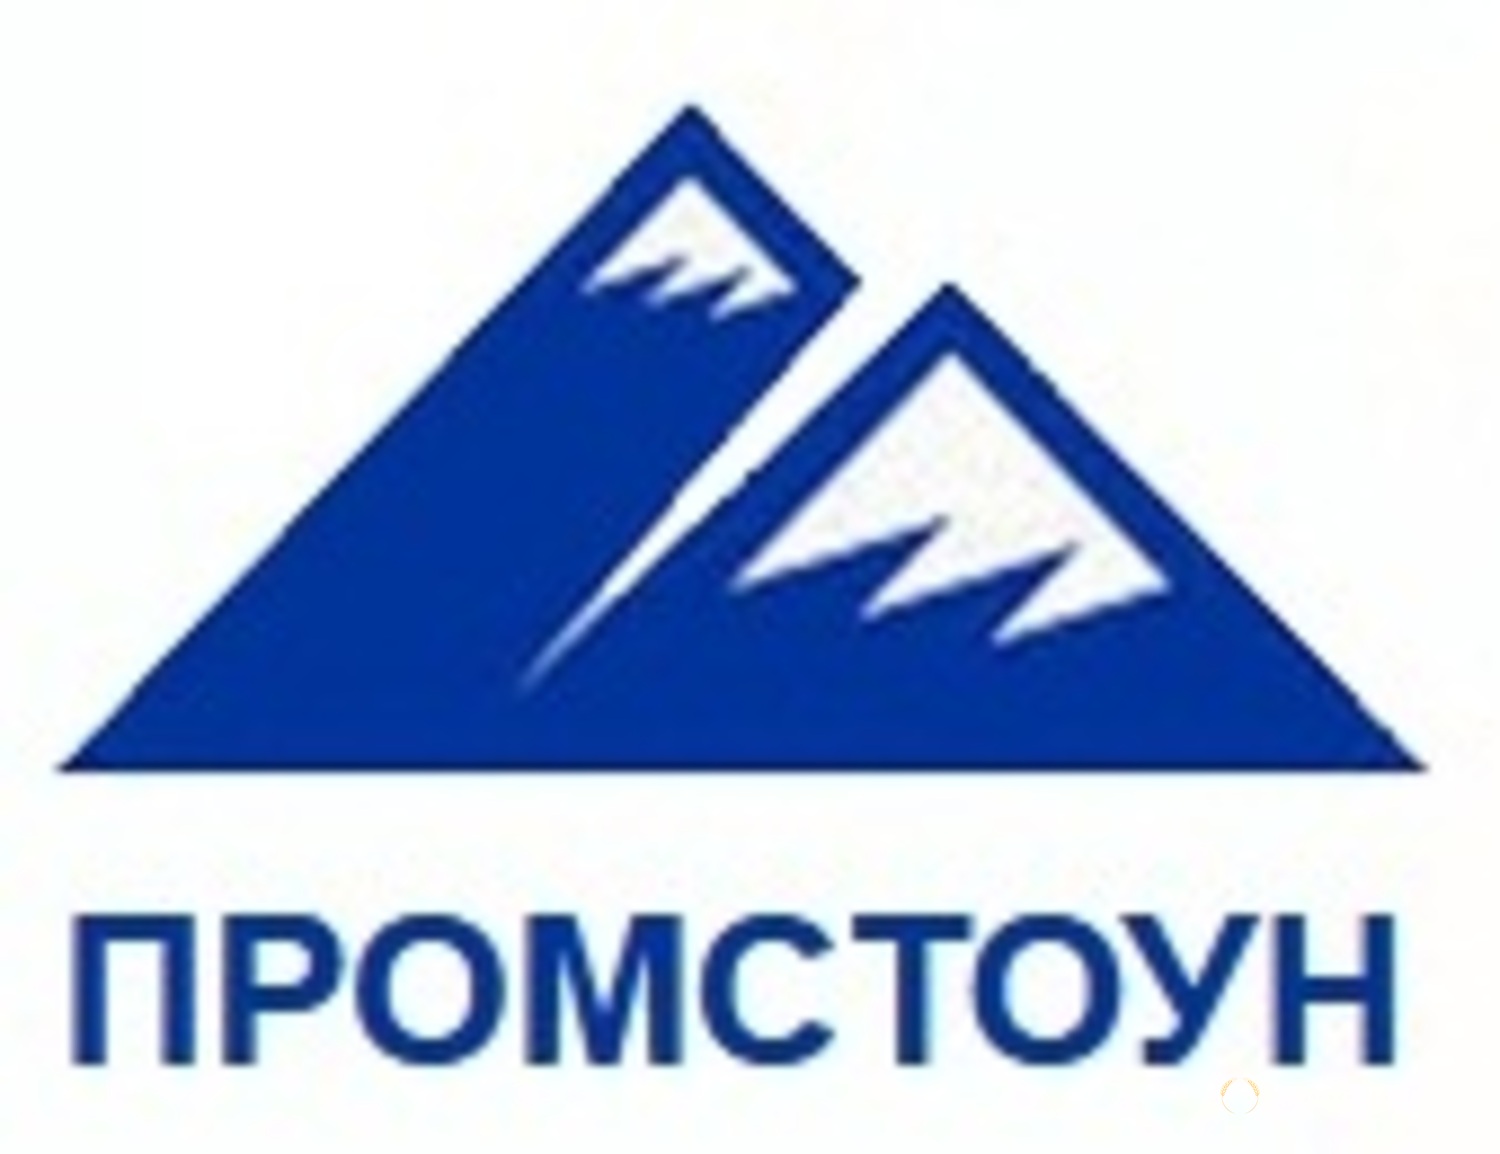 ПромСтоун, торгово-производственная компания, ООО